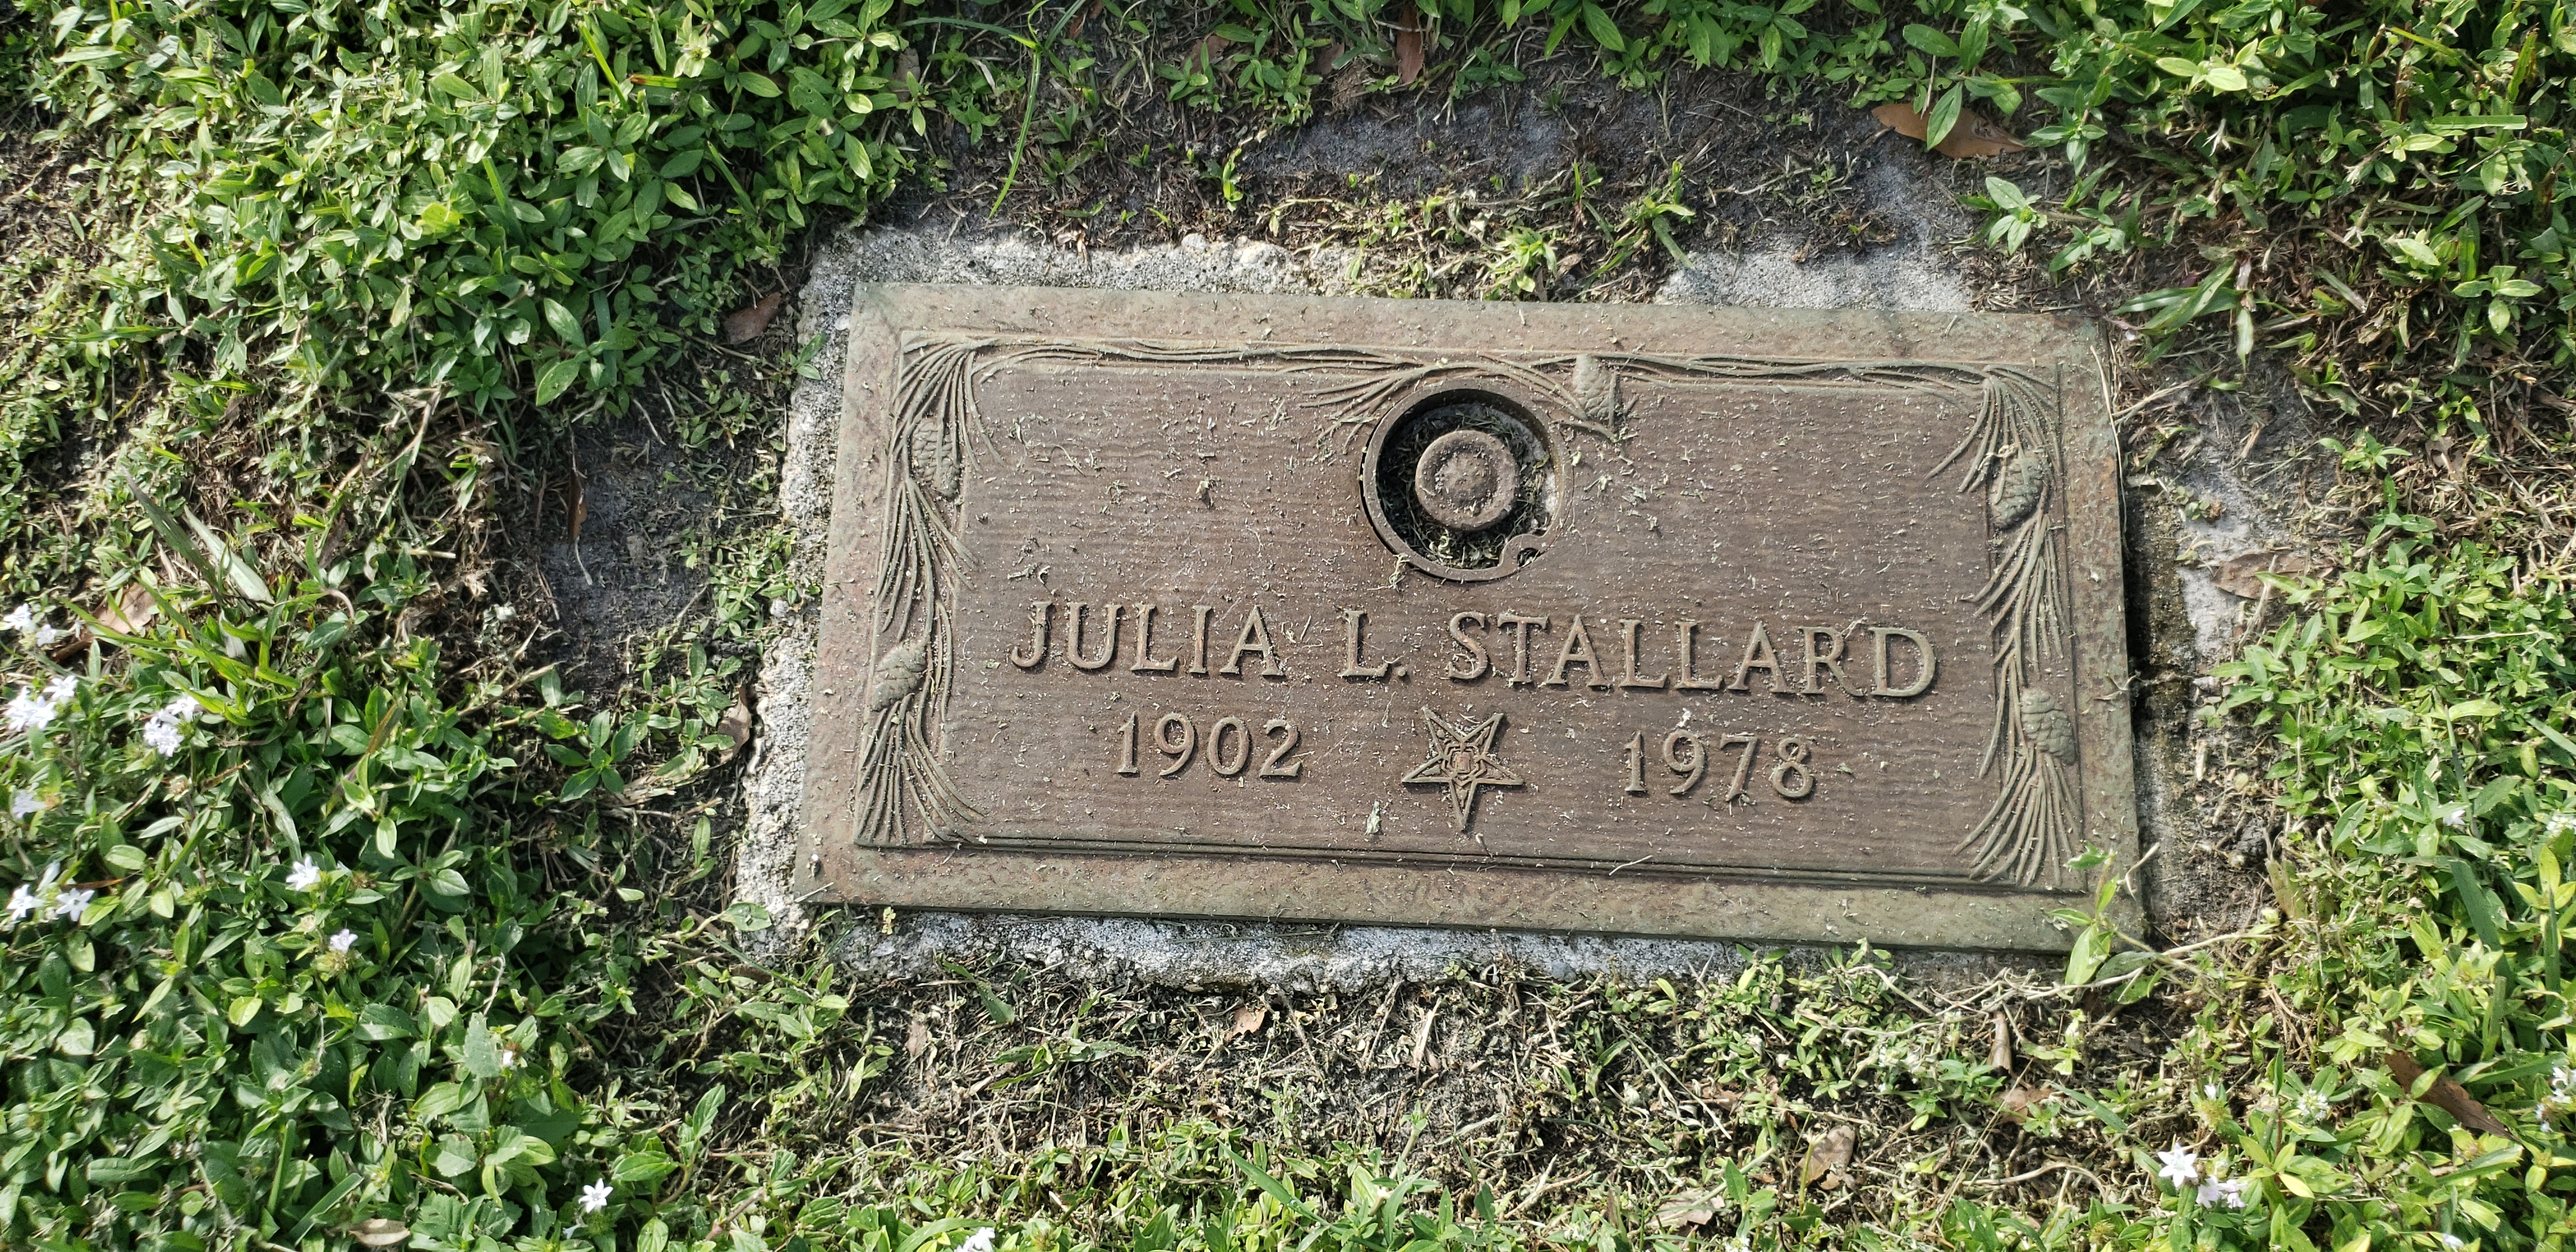 Julia L Stallard